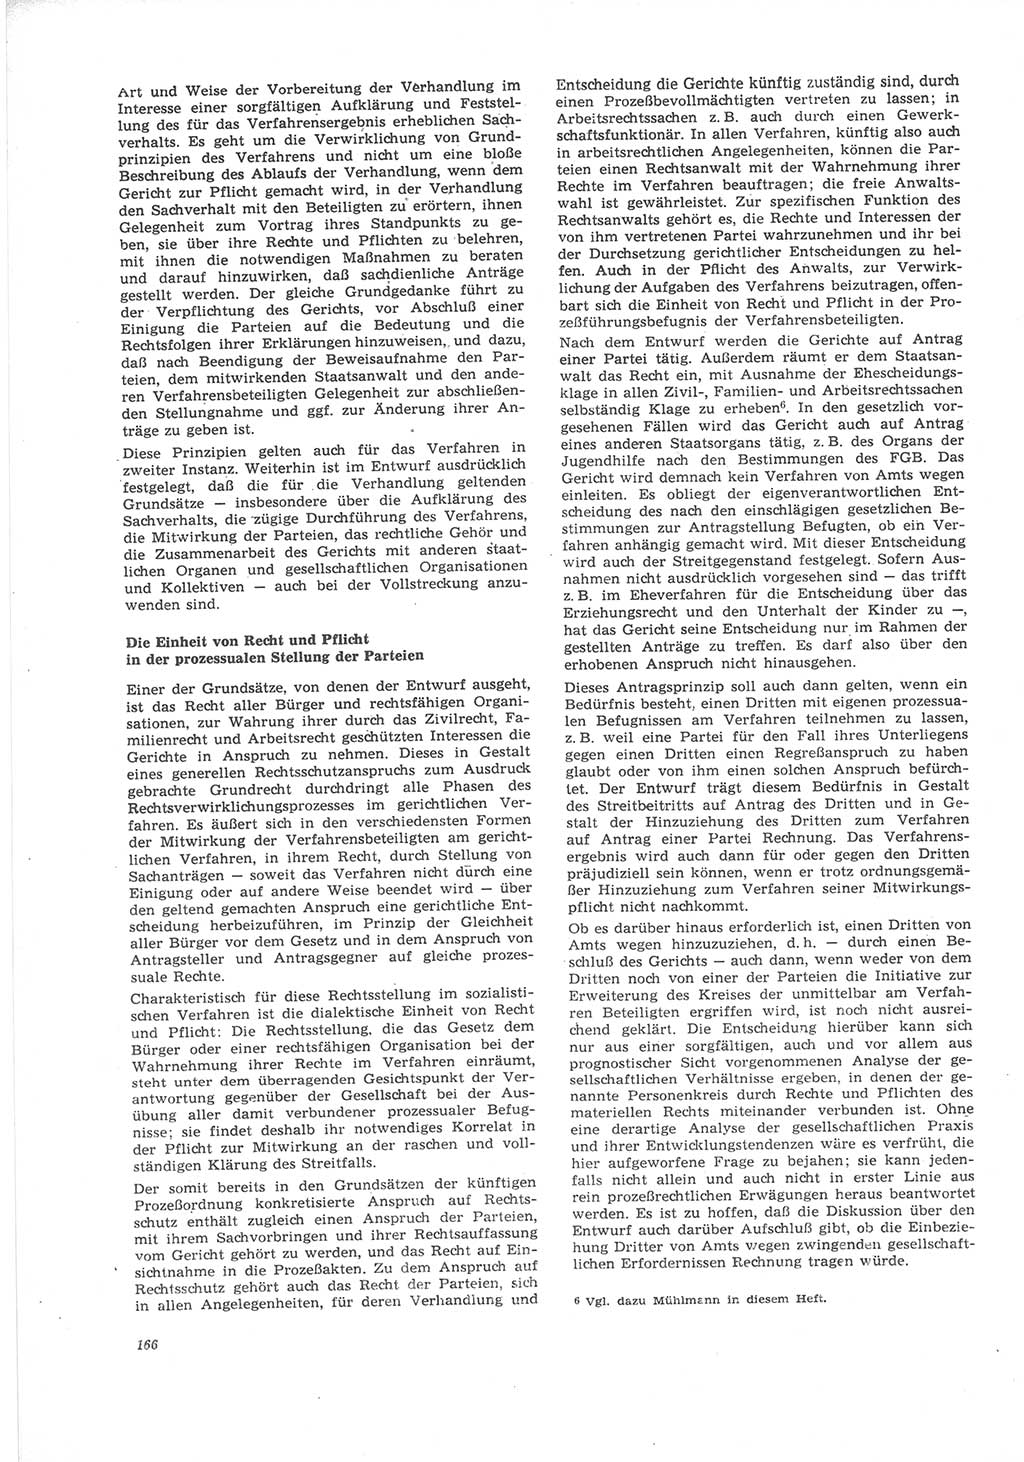 Neue Justiz (NJ), Zeitschrift für Recht und Rechtswissenschaft [Deutsche Demokratische Republik (DDR)], 24. Jahrgang 1970, Seite 166 (NJ DDR 1970, S. 166)